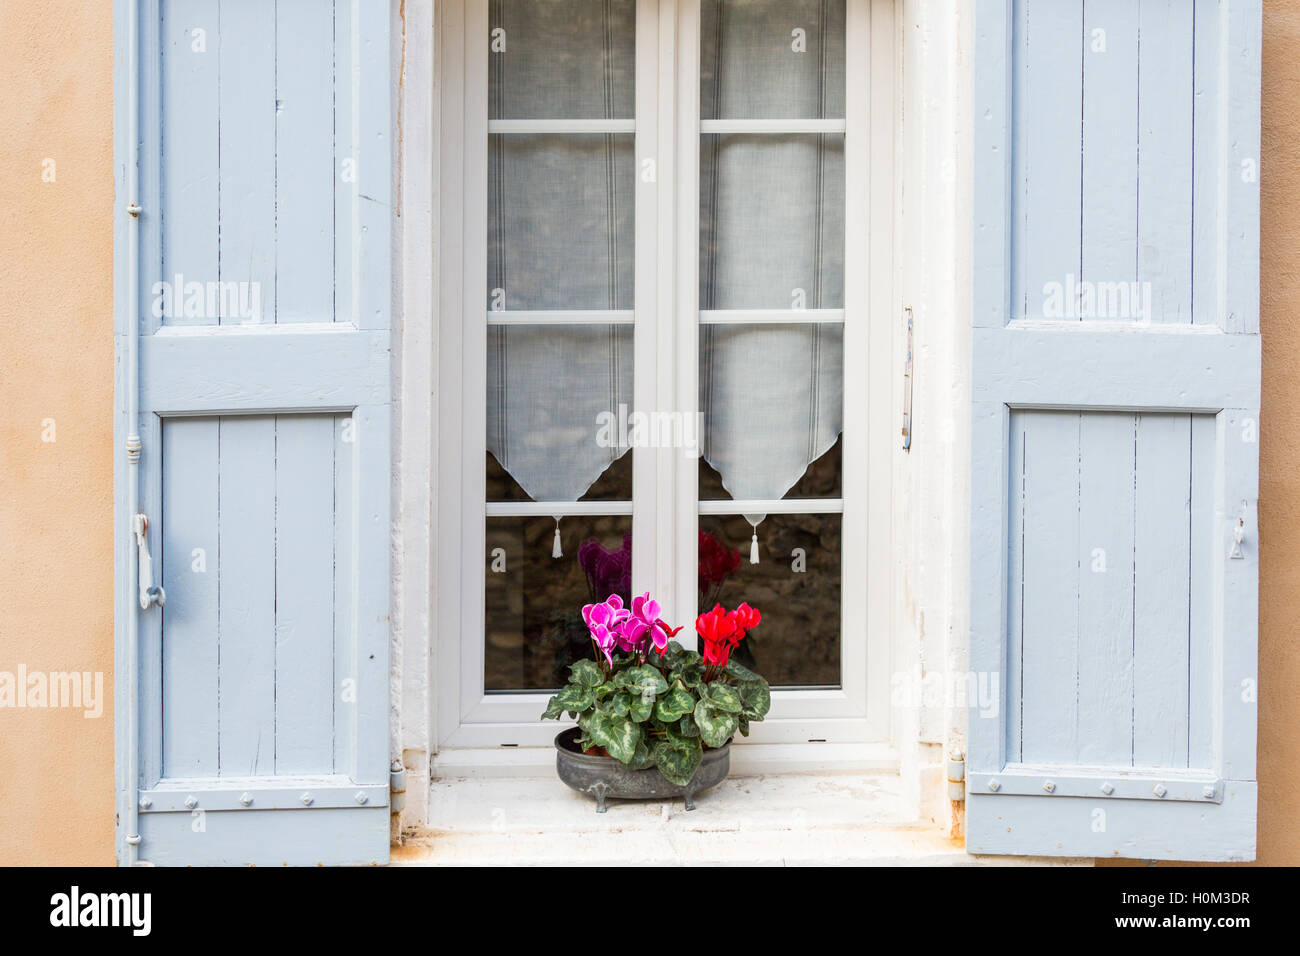 Cyclamen en pot sur le rebord de fenêtre avec des volets bleu pâle, Menerbes, Provence, France Banque D'Images